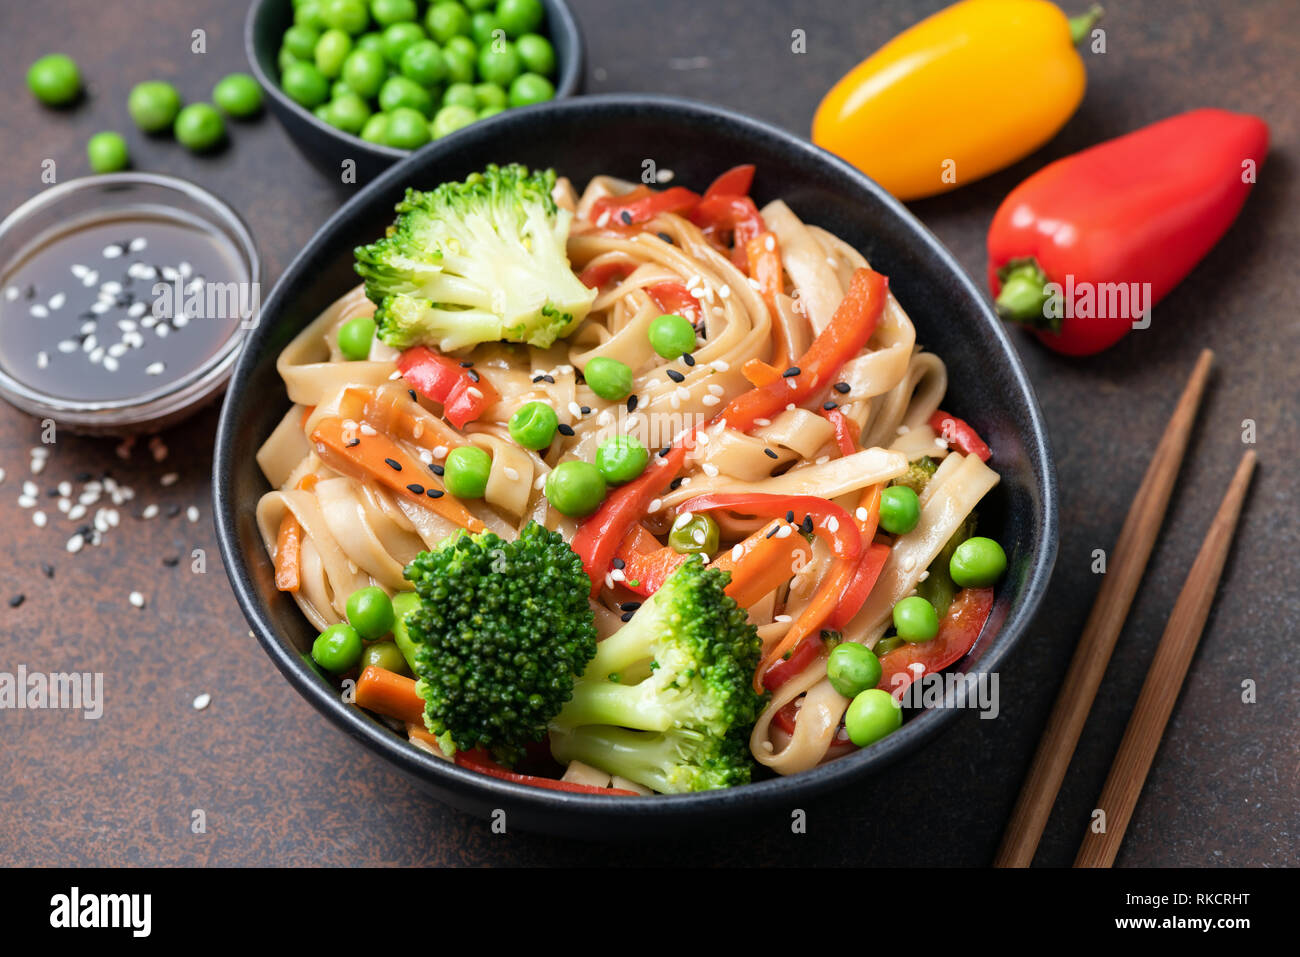 Asiatische Nudeln Pfannengerichte mit Gemüse in der Schüssel. Udon Nudeln mit Broccoli, Paprika, Karotte und grüne Erbsen Stockfoto